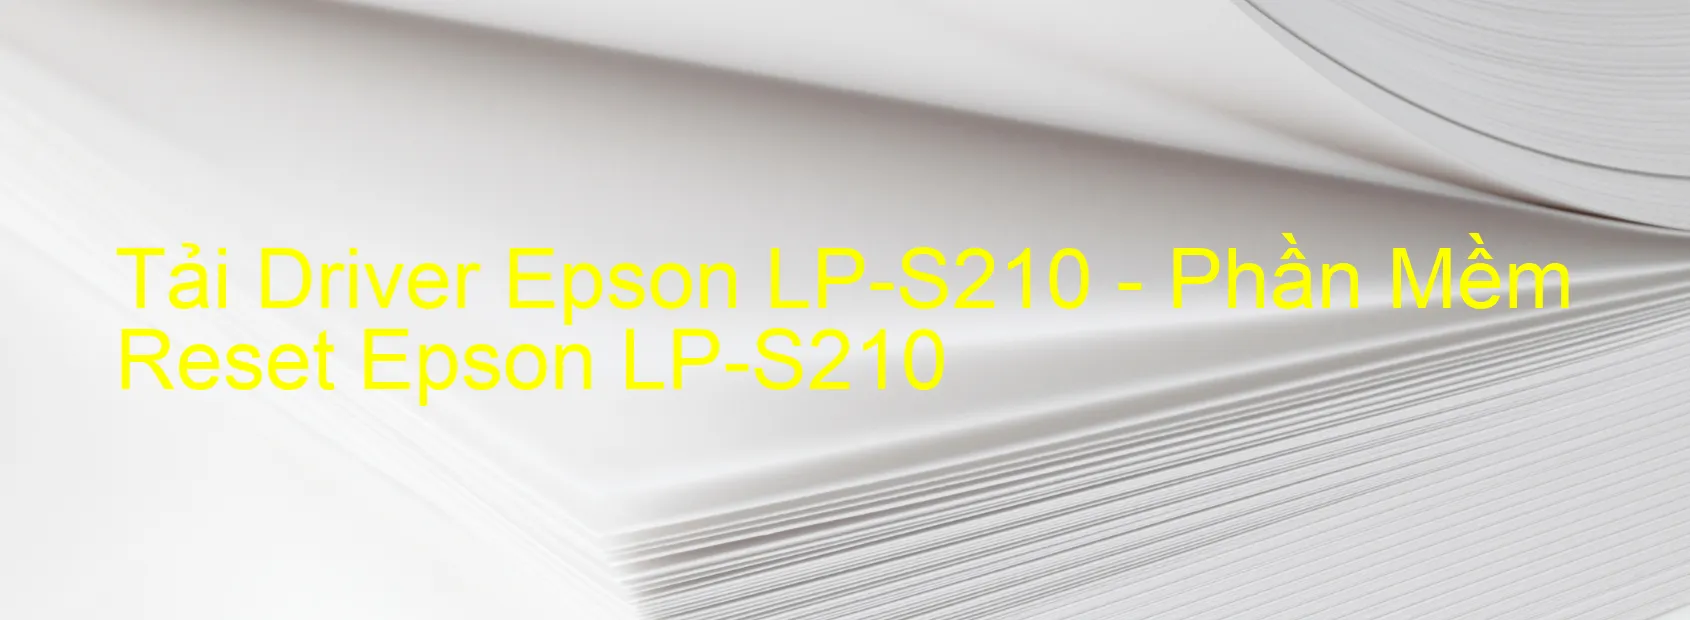 Driver Epson LP-S210, Phần Mềm Reset Epson LP-S210